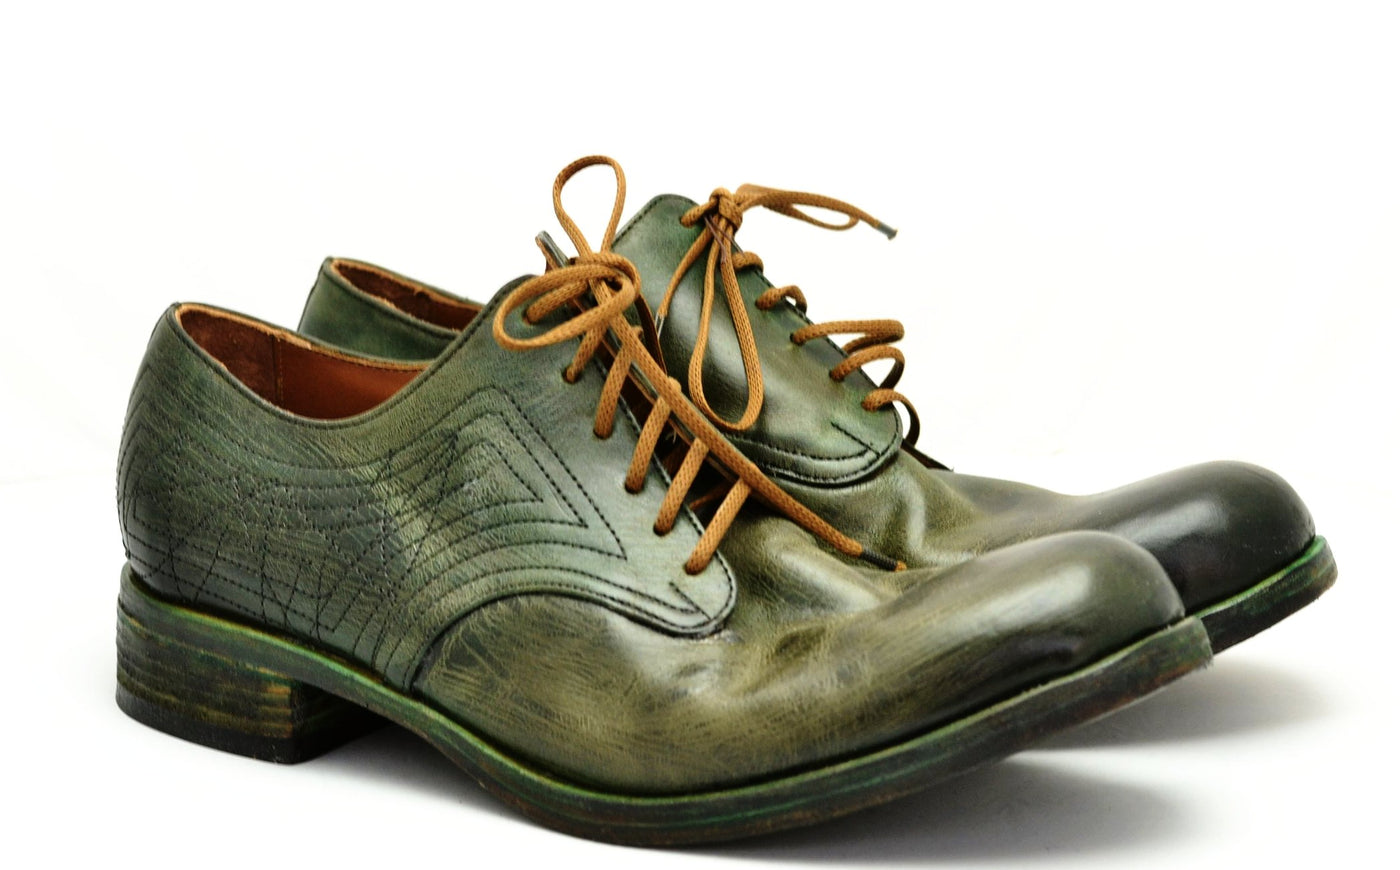 Derby Shoe / seaweed cordovan - A 